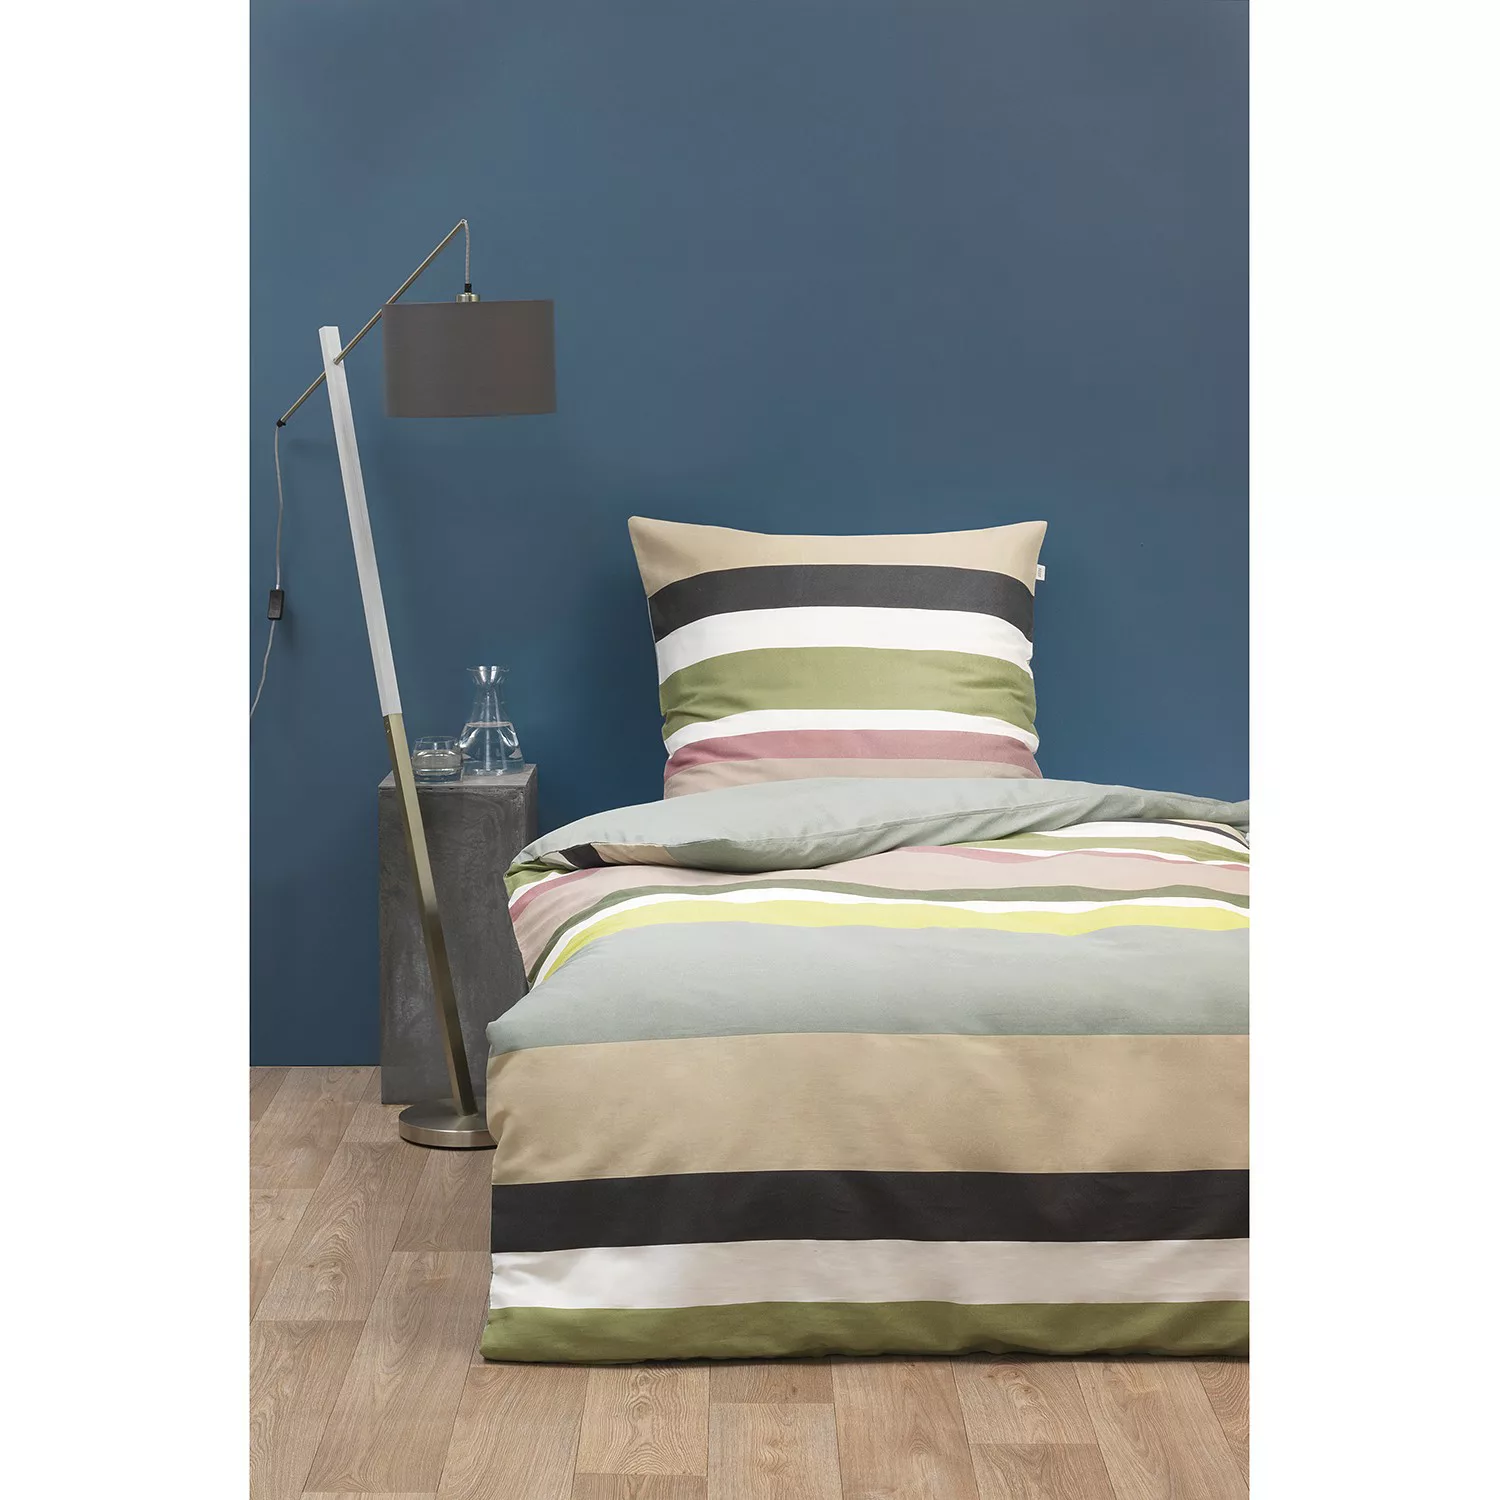 Schöner Wohnen Kollektion Bettwäsche mit hochwertigem Reißverschluss 2 Größ günstig online kaufen